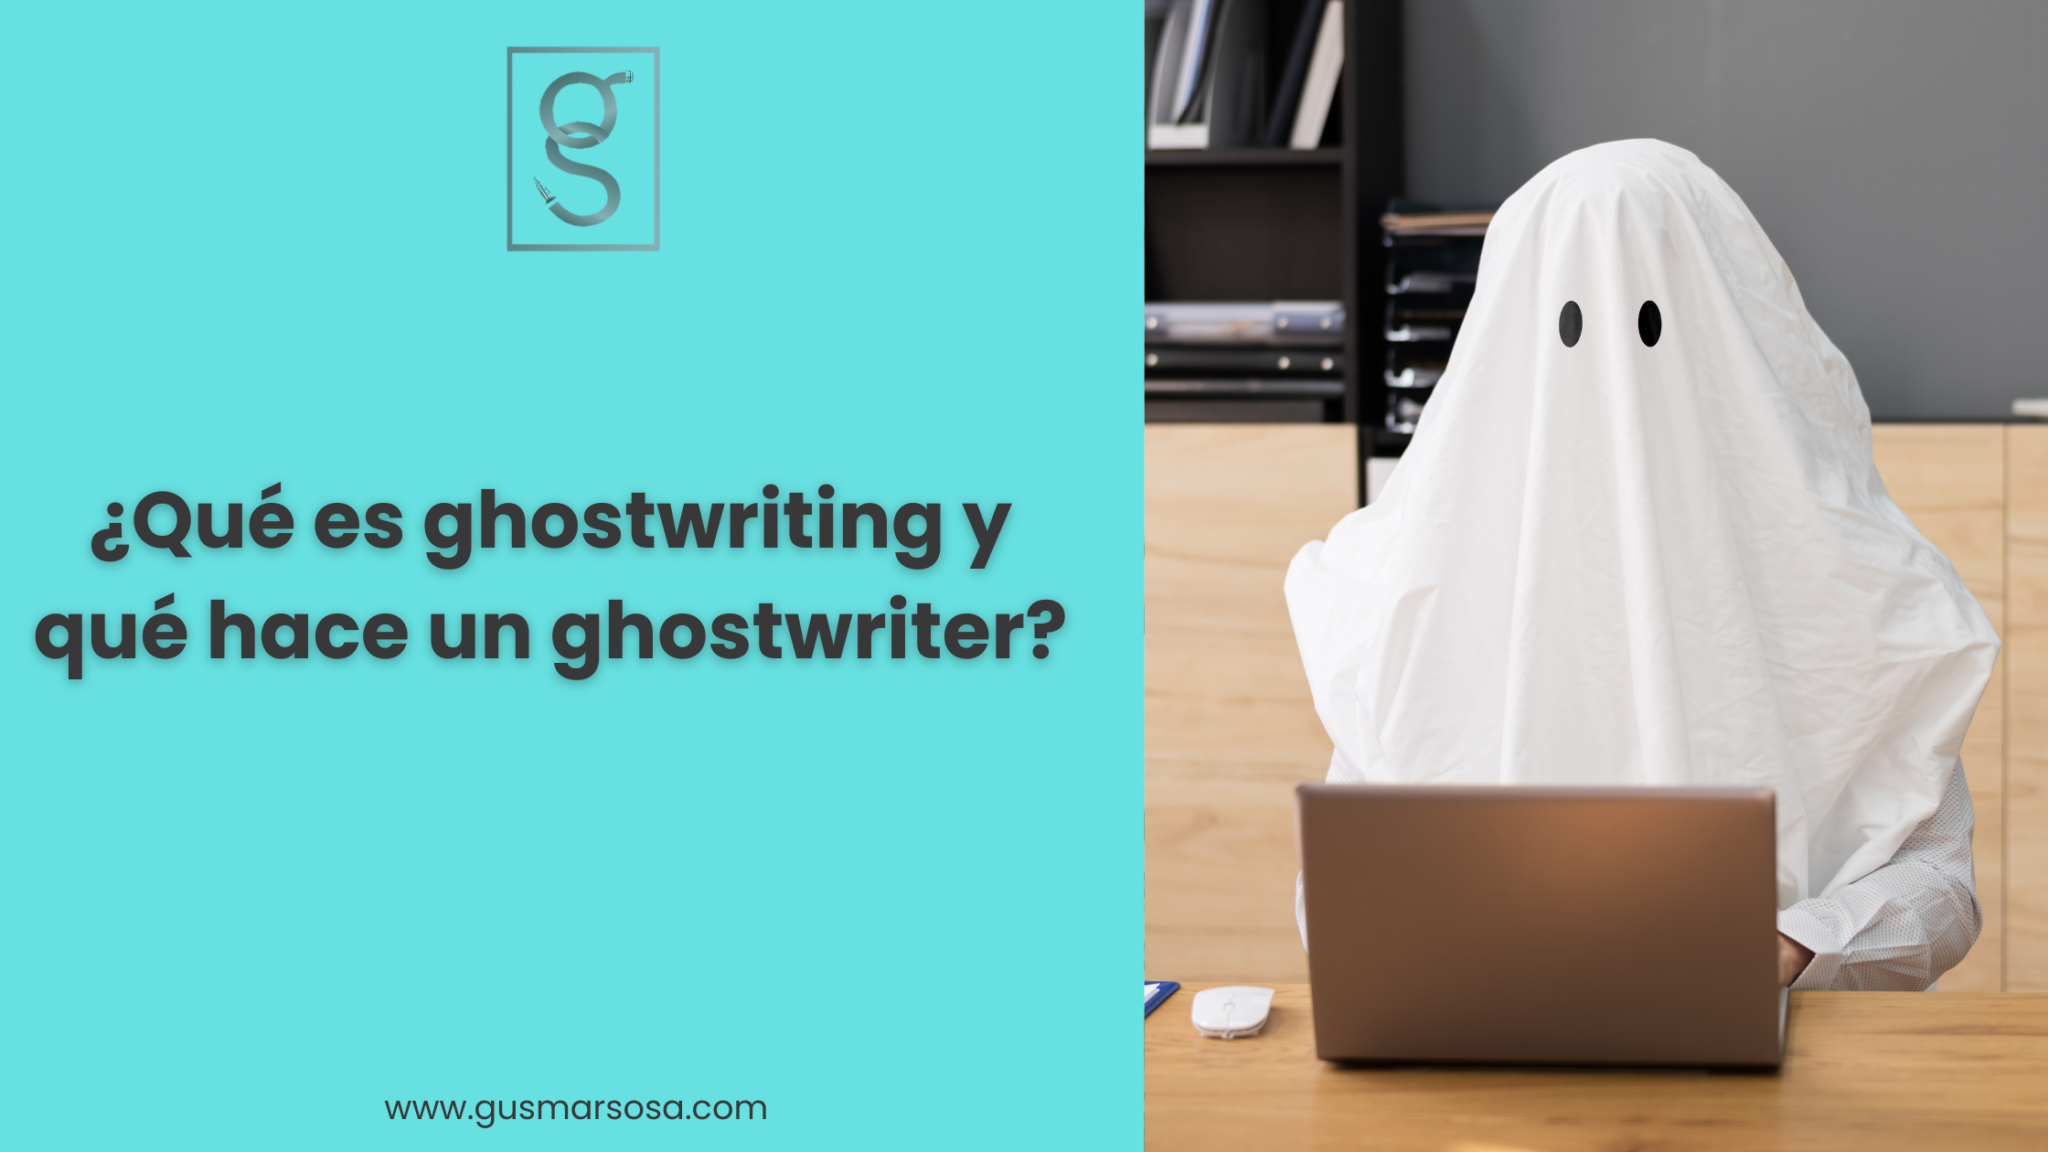 ¿Qué es ghostwriting y qué hace un ghostwriter?